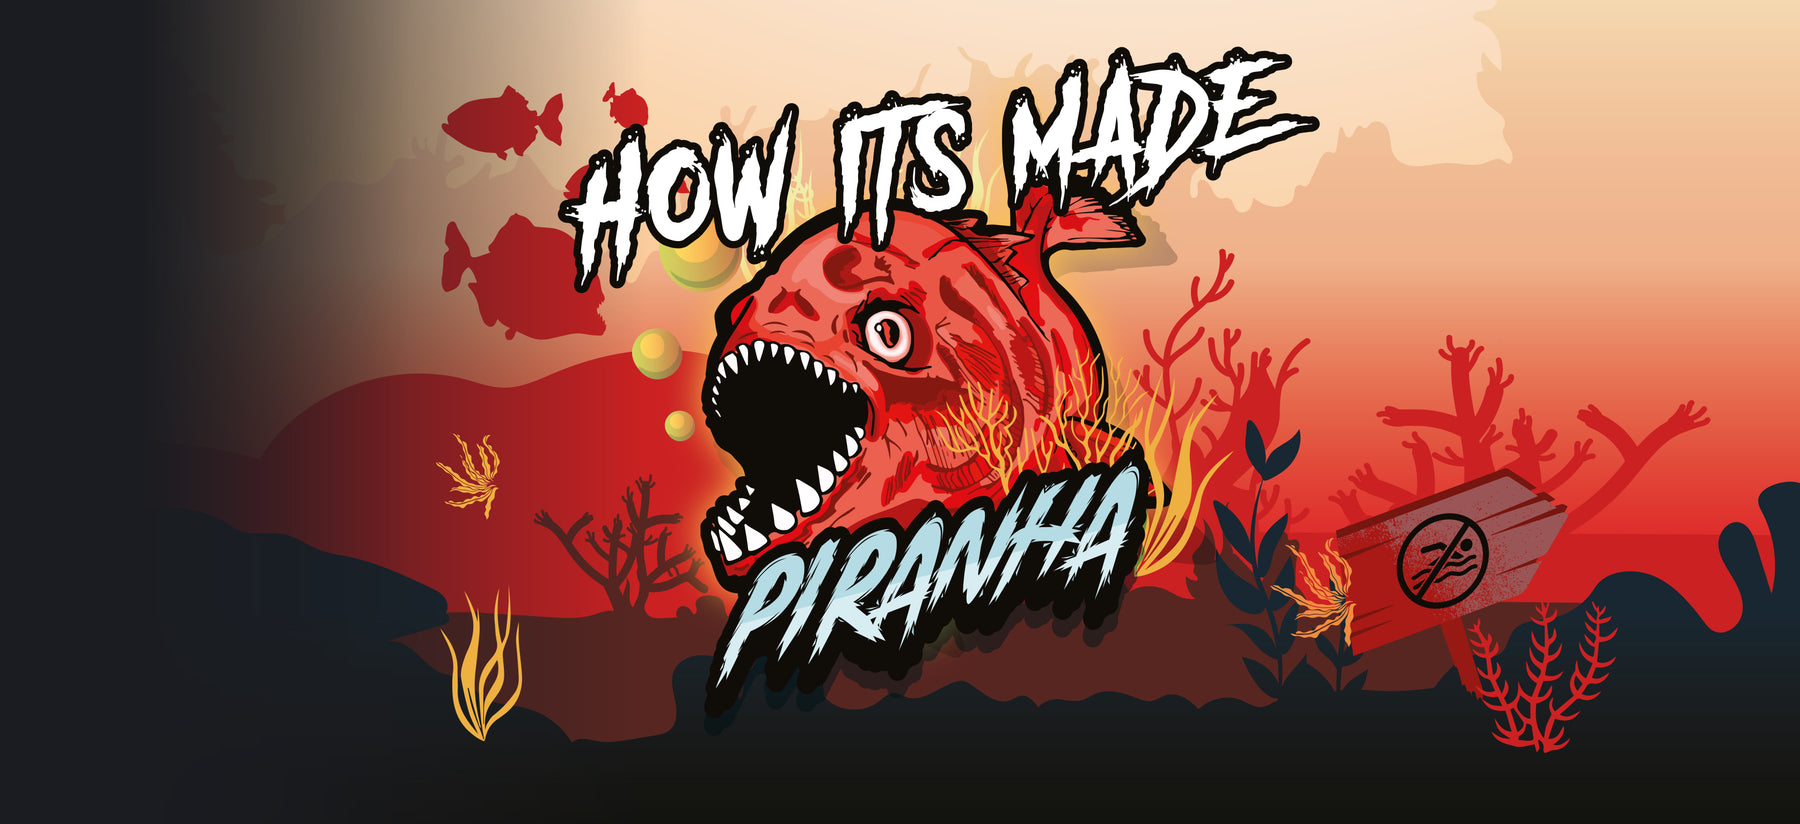 Piranha - How Its Made